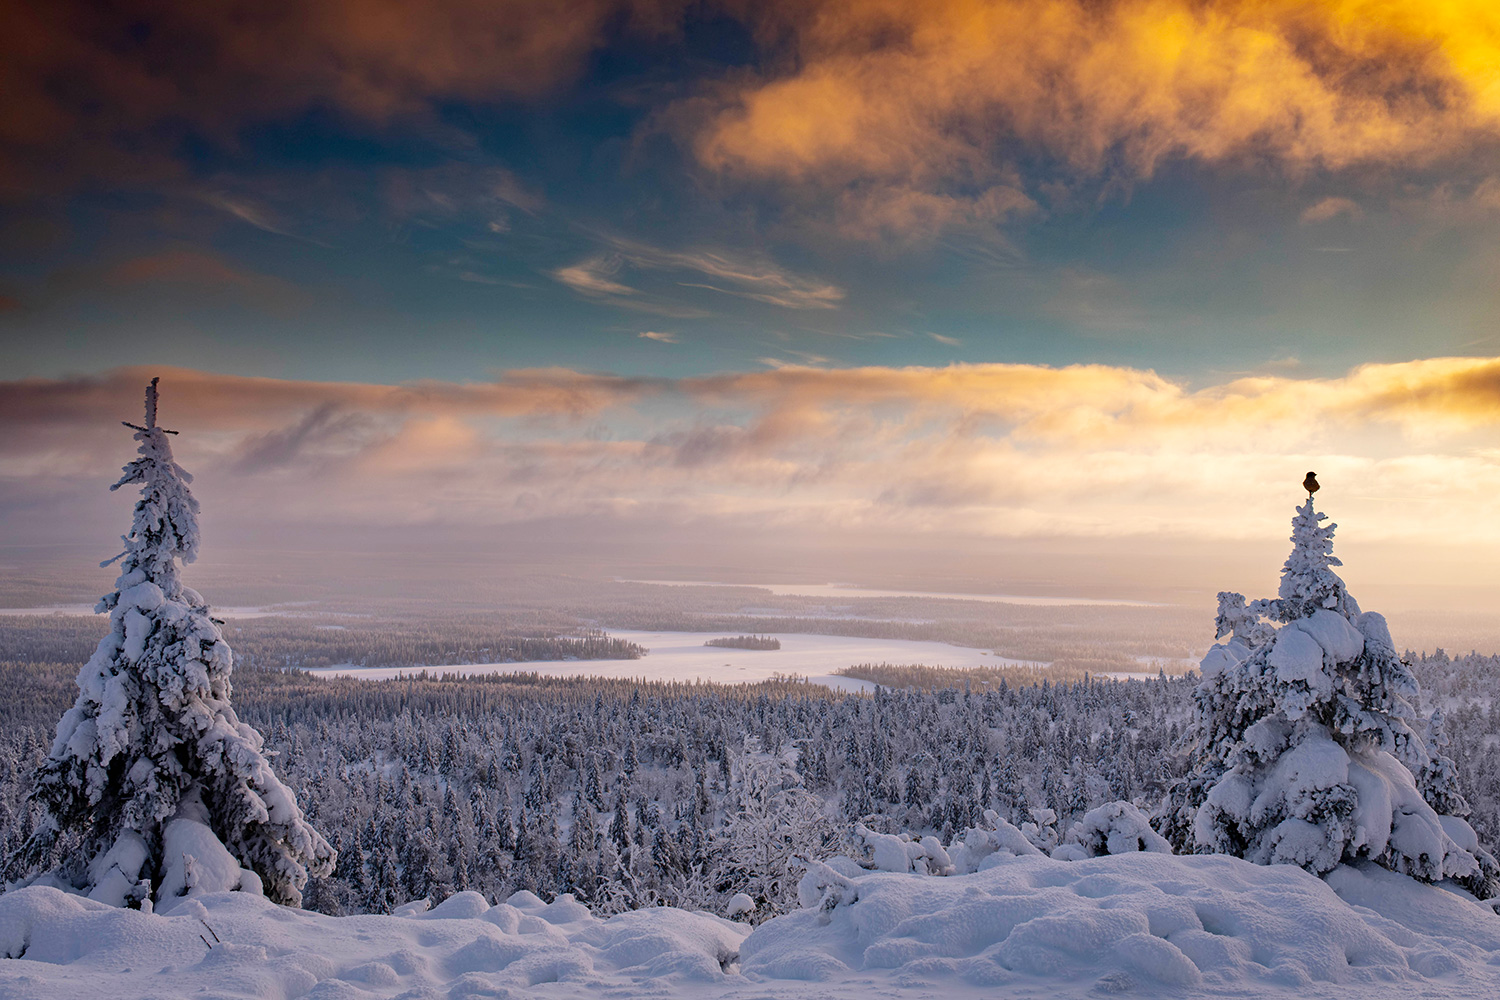 Valtavaara view - Lapland - Finland